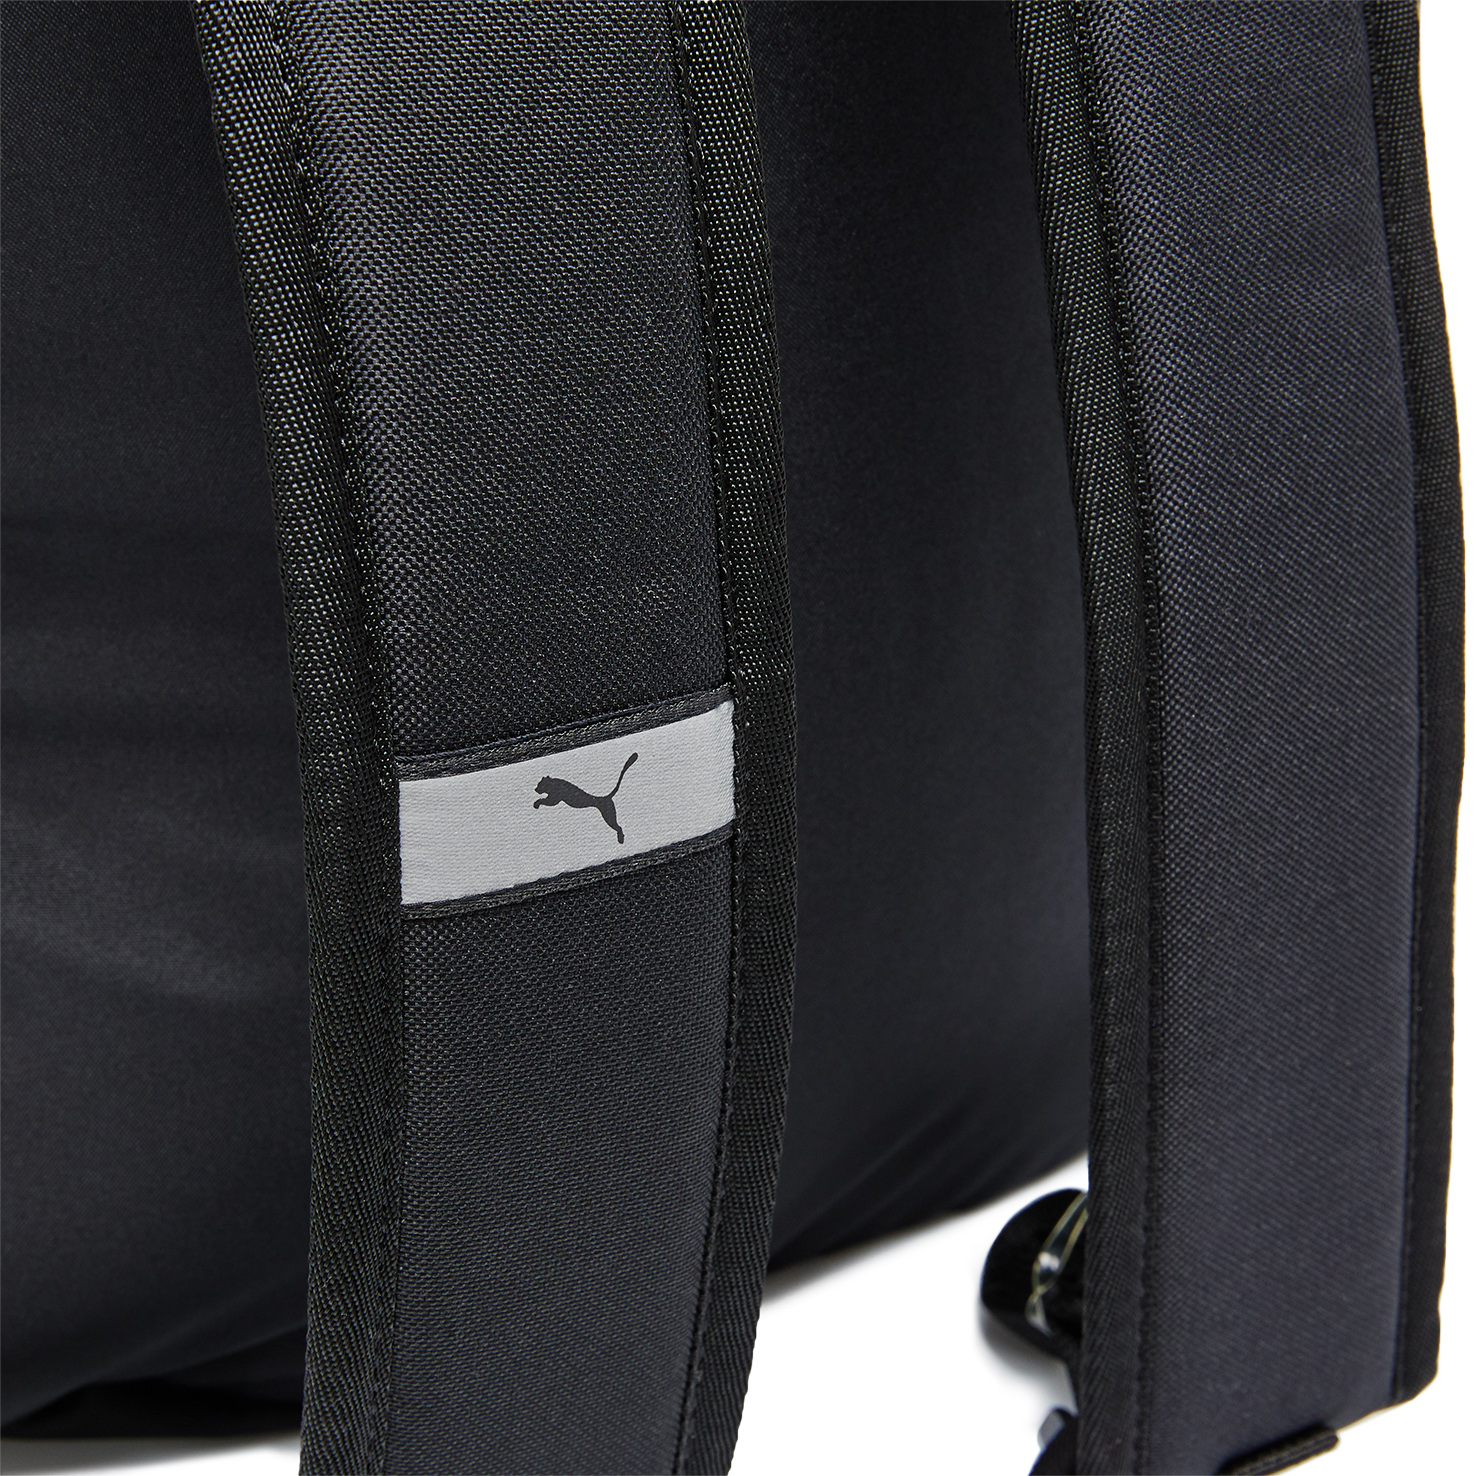 Phase Backpack No. 2 PUMA, размер Один размер, цвет черный PM077482 - фото 4